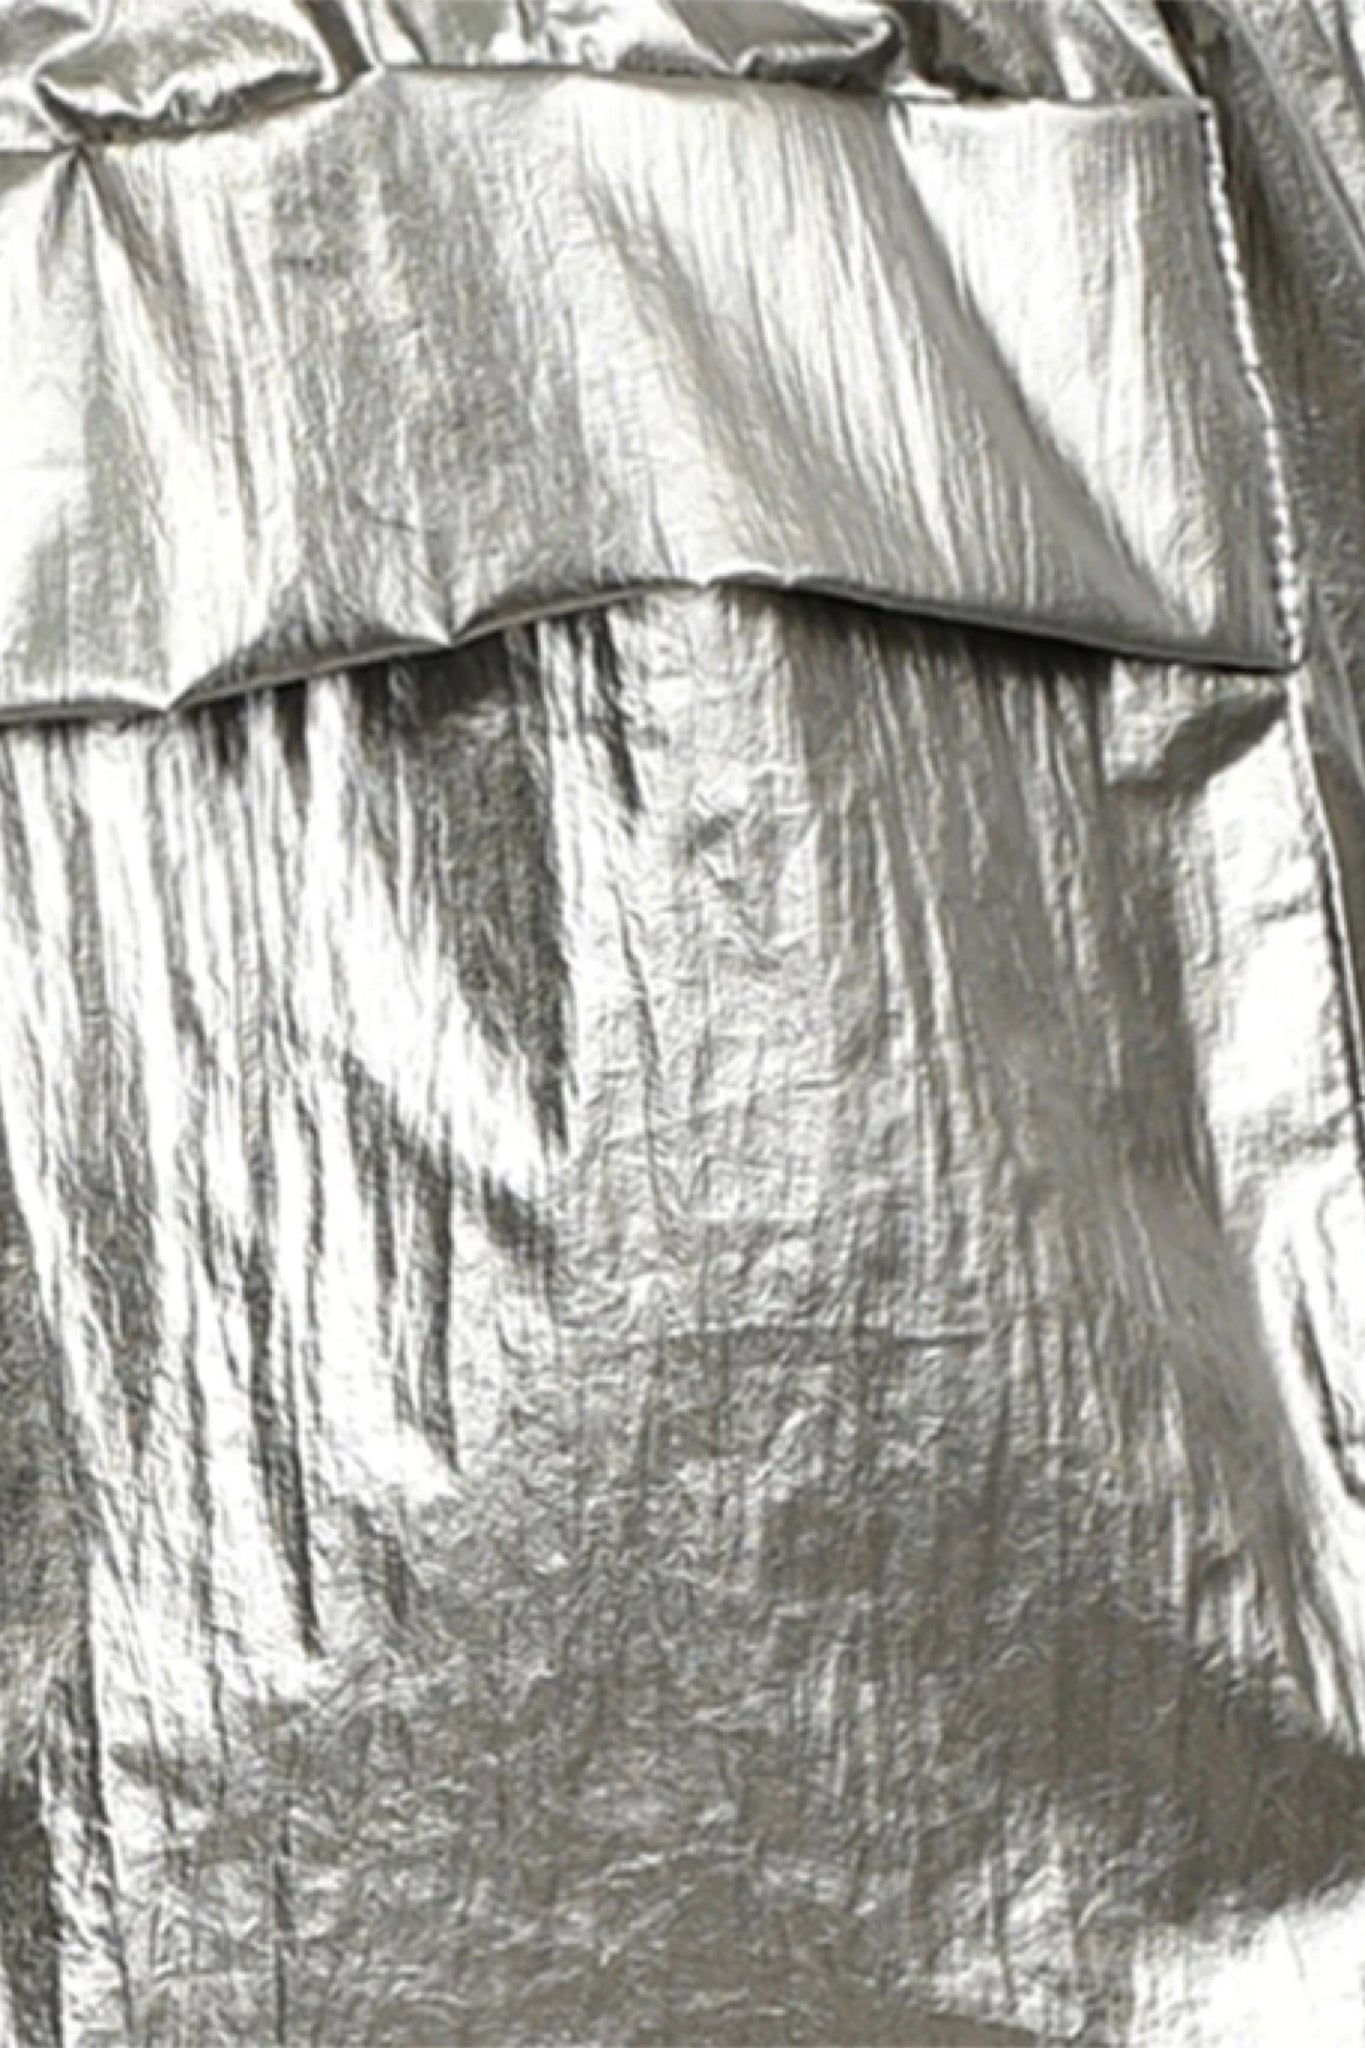 Pantalon cargo | Bronze métallisé